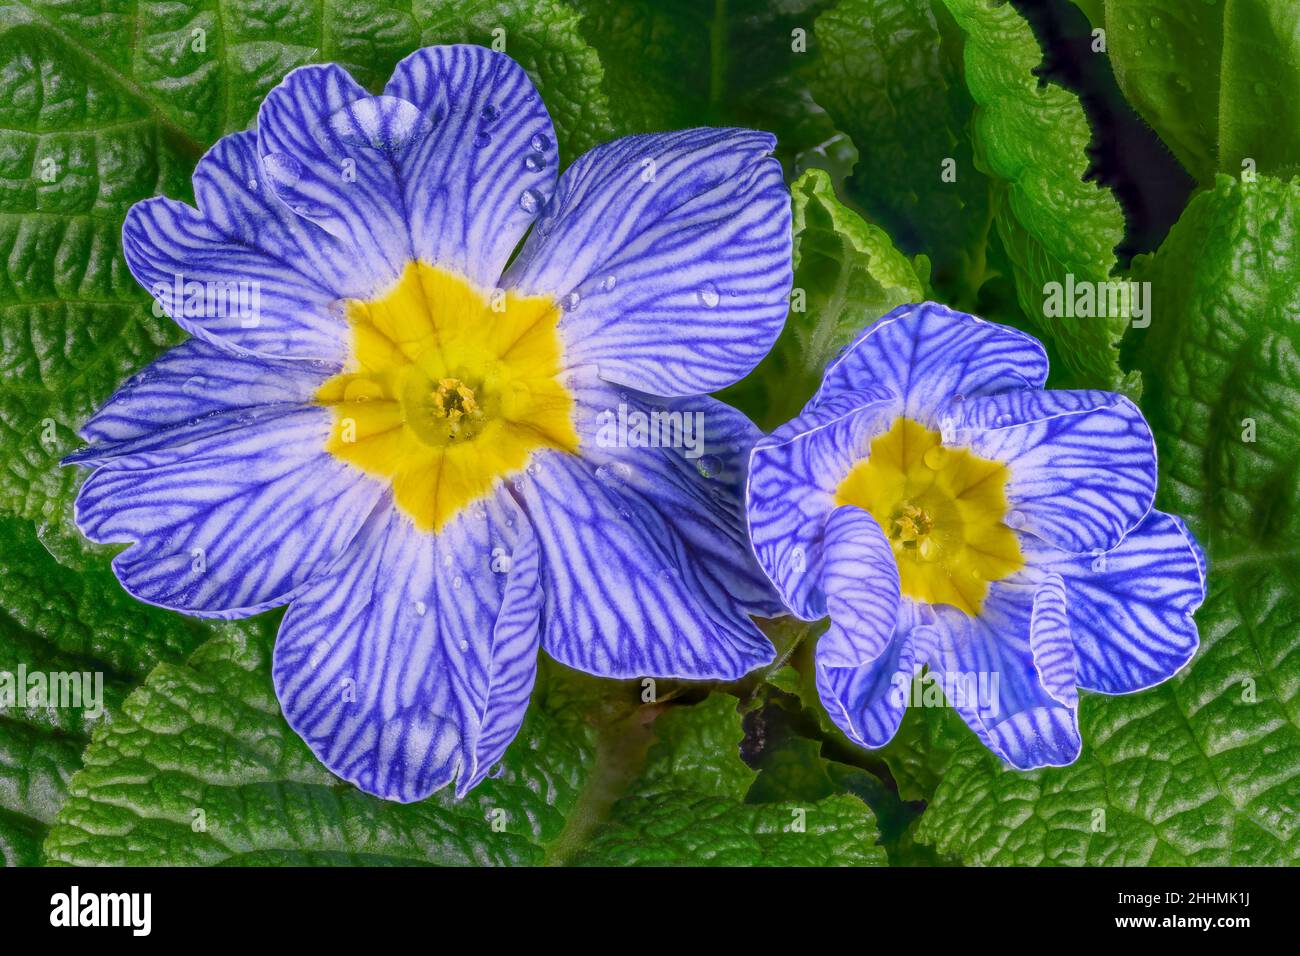 Magnifique Primula bleue, (Primula vulgaris), également connu sous le nom de Primrose, fleurs nichées parmi les feuilles vert foncé et parsemées de gouttes de rosée Banque D'Images